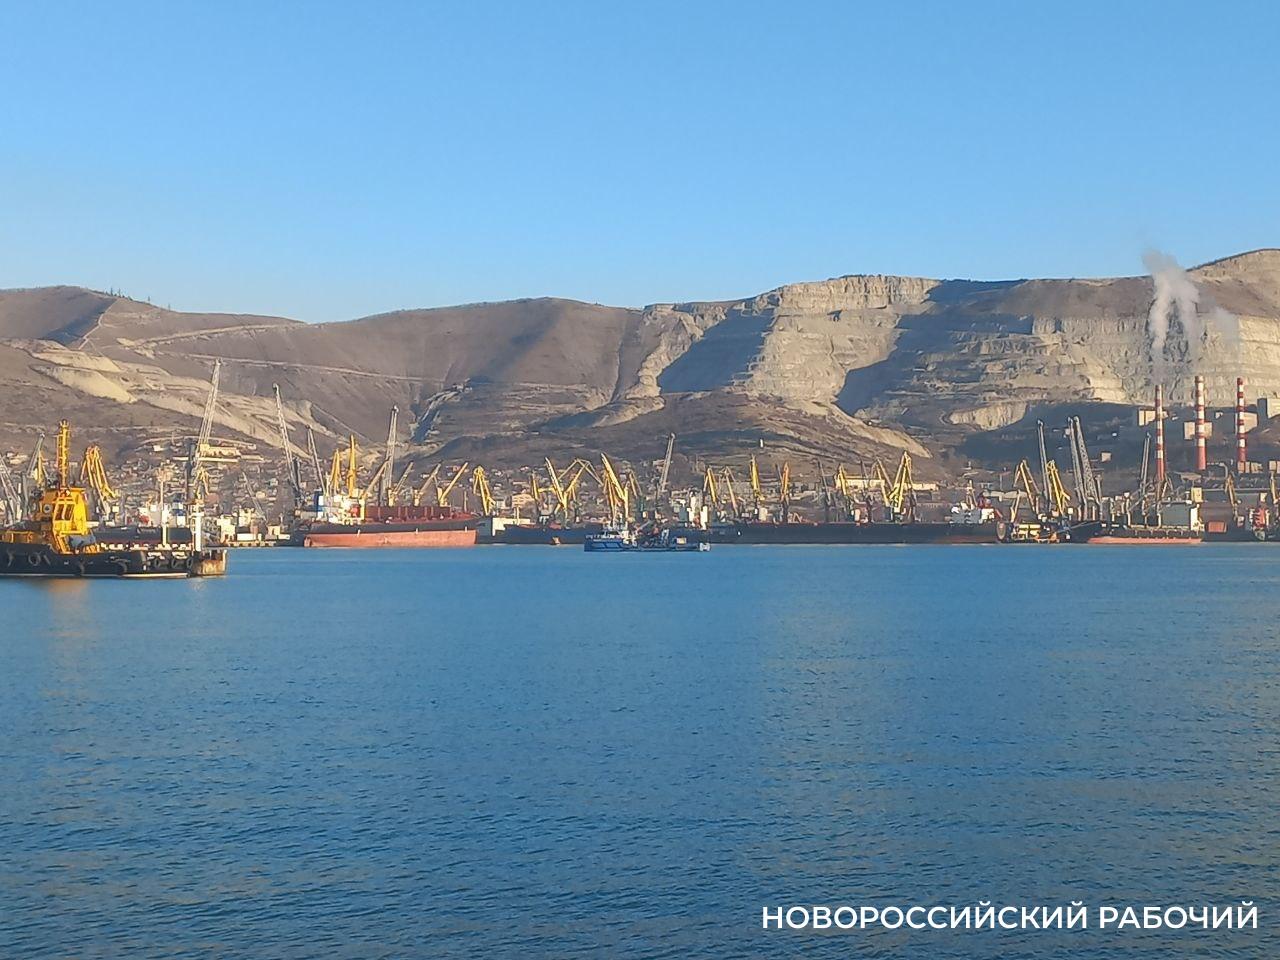 В Новороссийске продолжаются рекорды по перевалке зерна и контейнерообороту